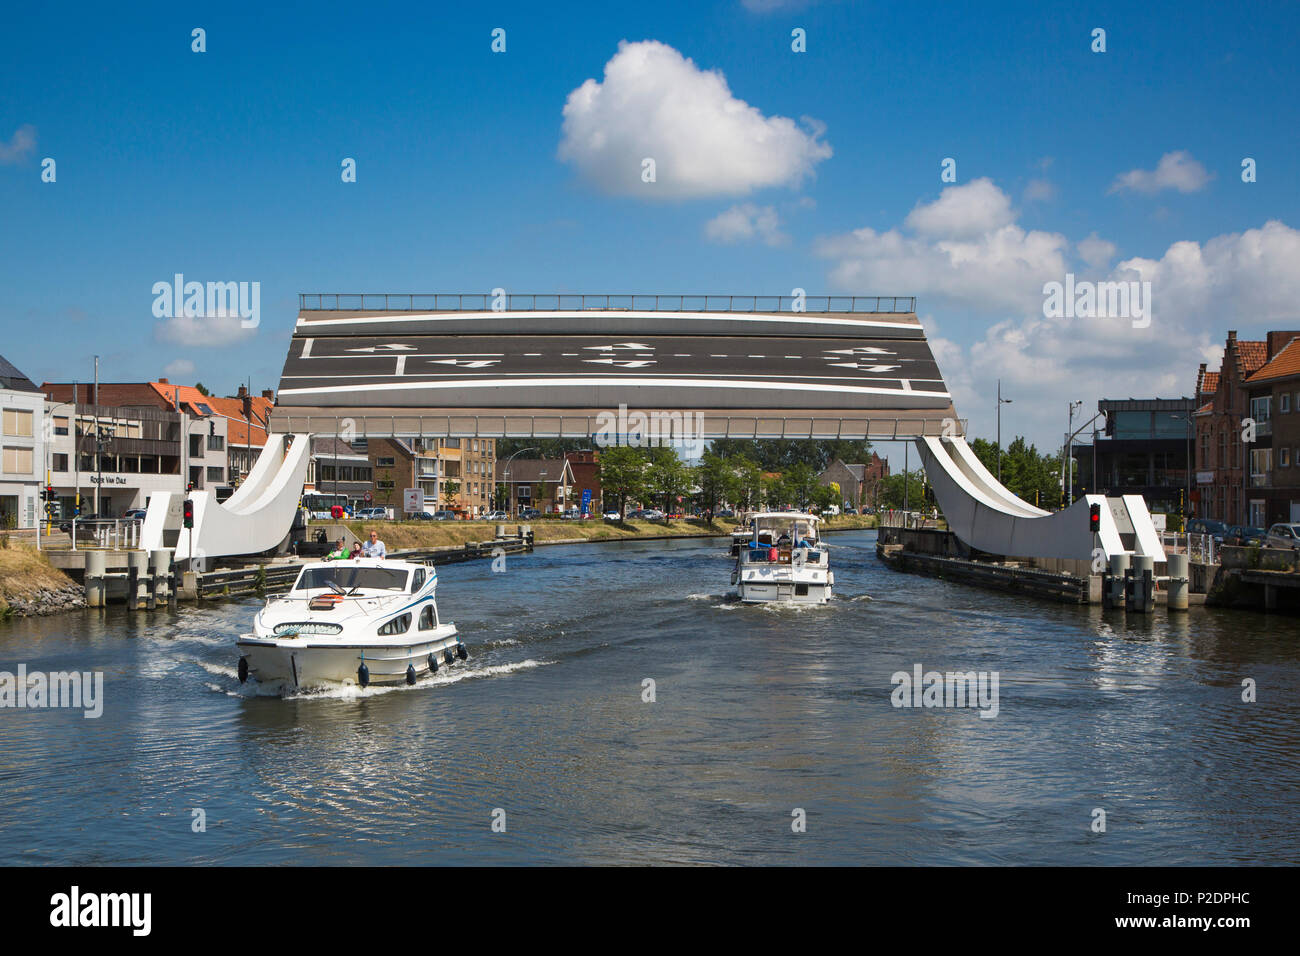 Le Boat Elegance houseboat and Scheepsdalebrug drawbridge on the Bruges - Ostend canal, near Bruges Brugge, Flemish Region, Belg Stock Photo